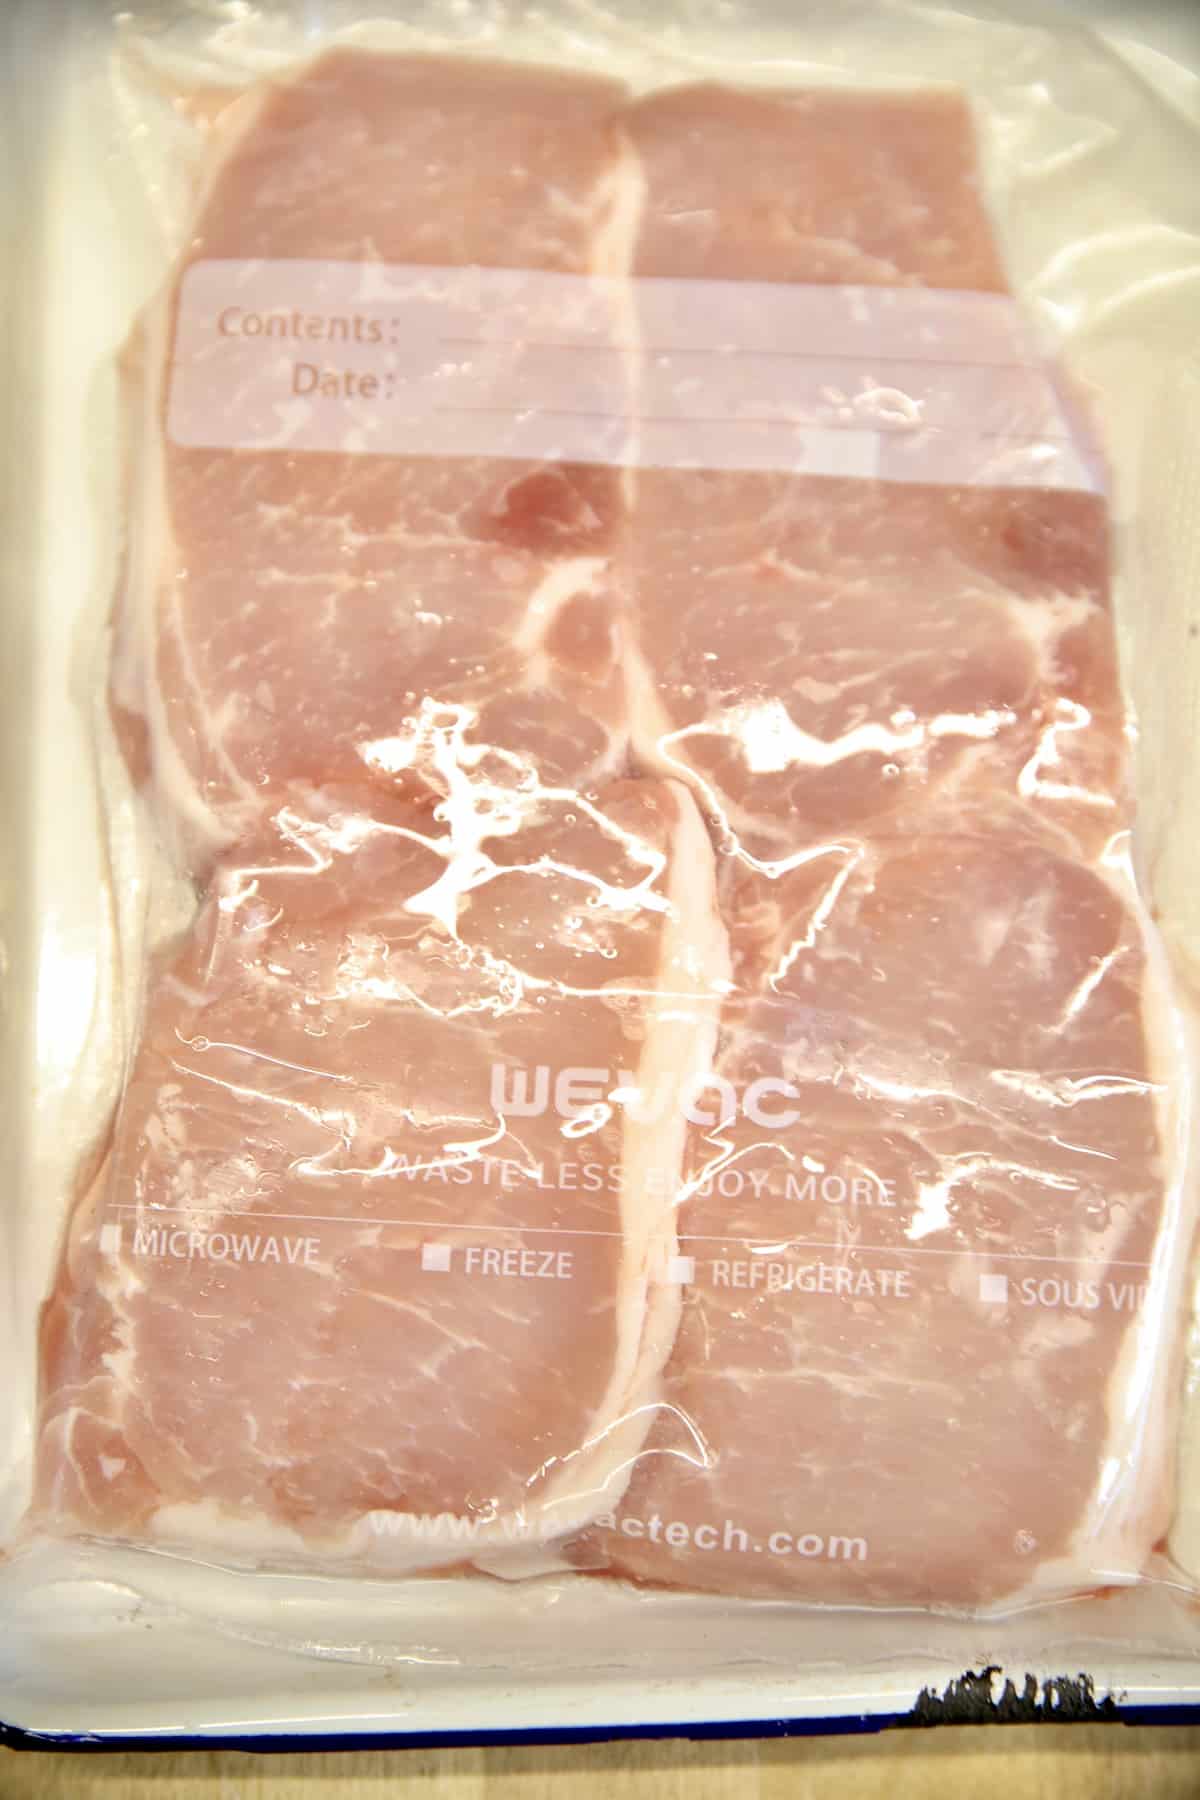 4 boneless pork chops in a package.